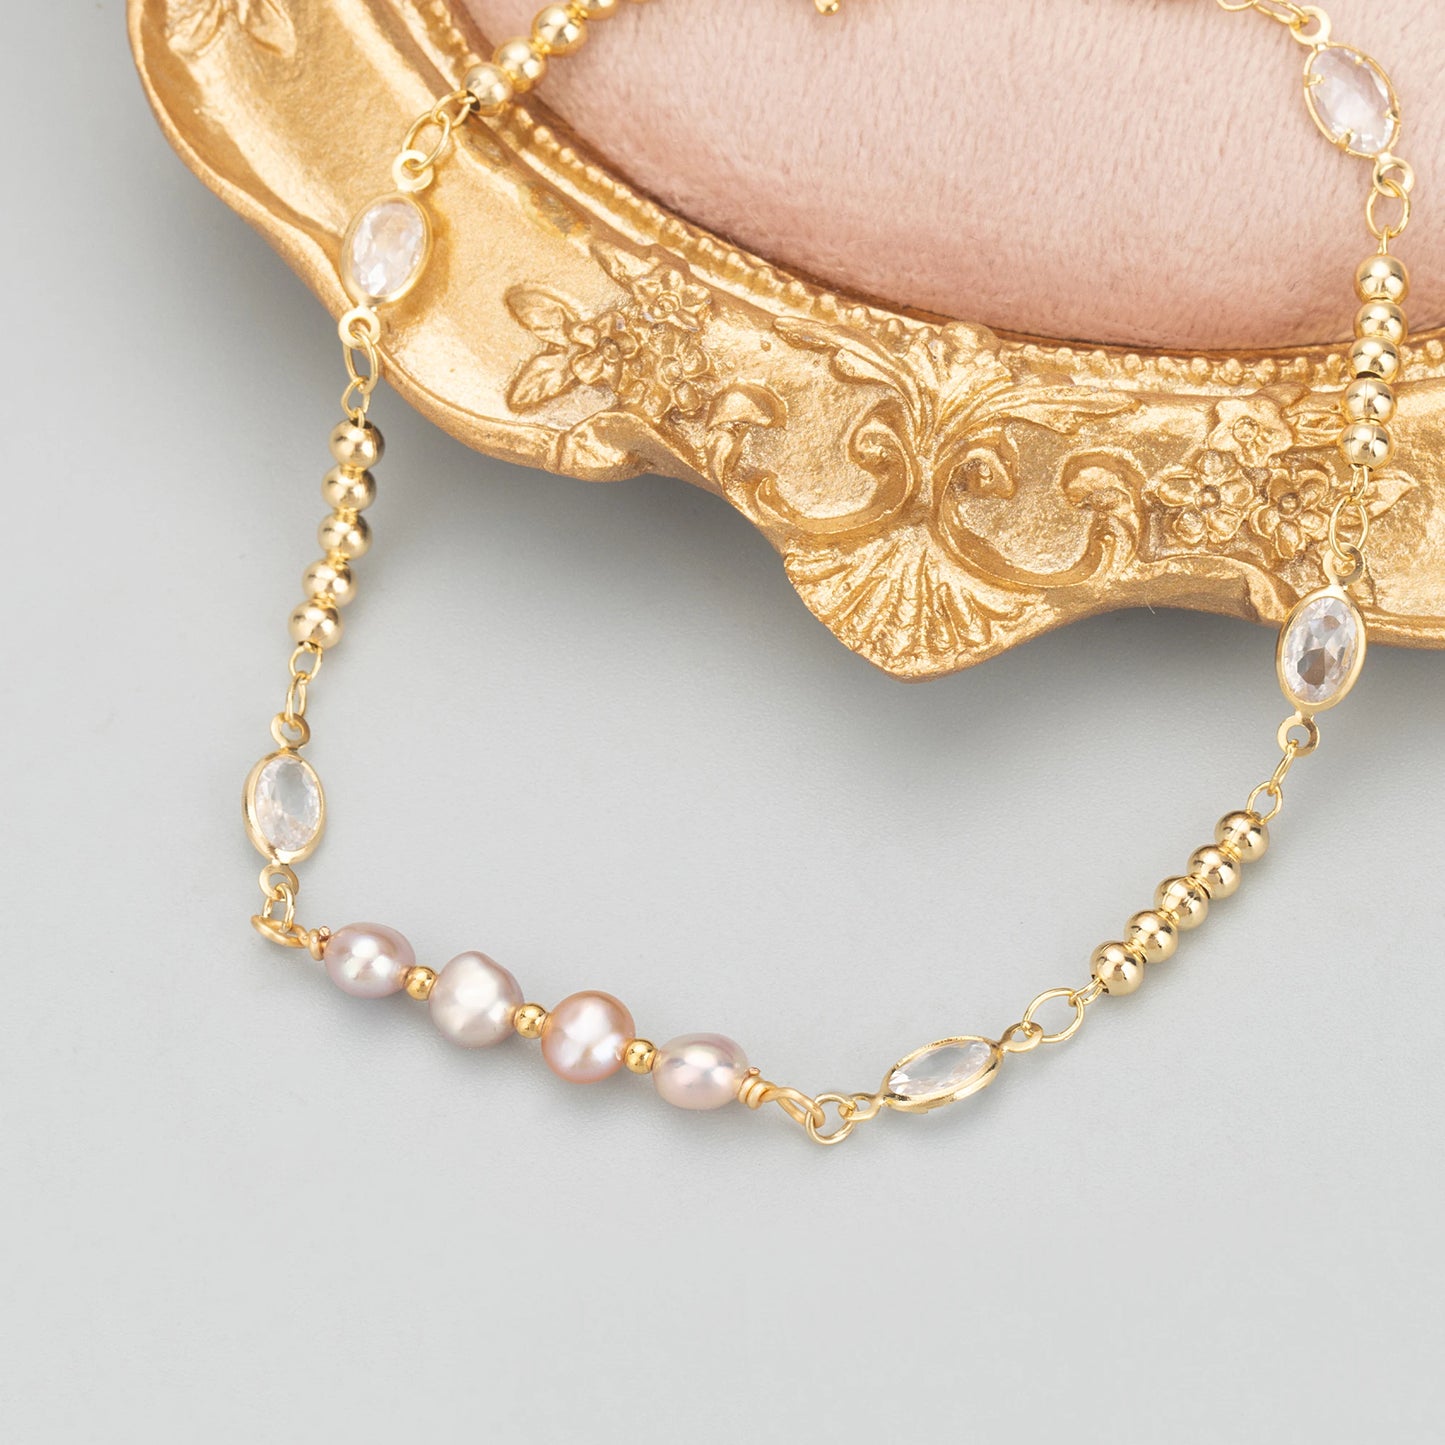 GUFEATHER MD23, ​​accesorios de joyería, hechos a mano, perlas naturales de alta calidad, fabricación de joyas, conector de perlas, colgantes diy, 4 unids/lote 